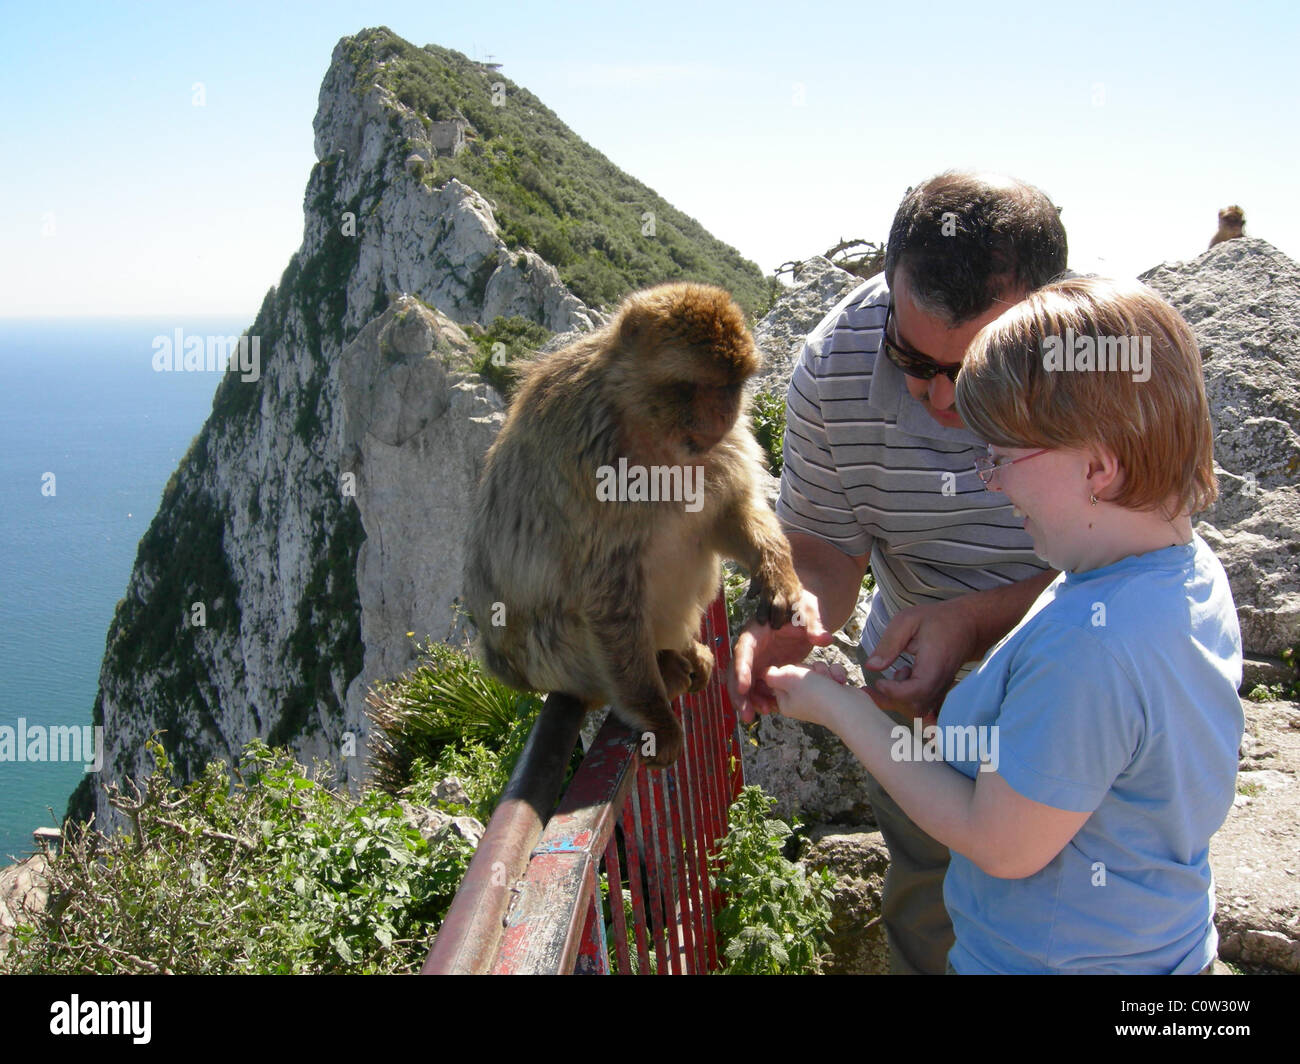 Feeding a wild Gibraltar monkey on Gibraltar rock Stock Photo